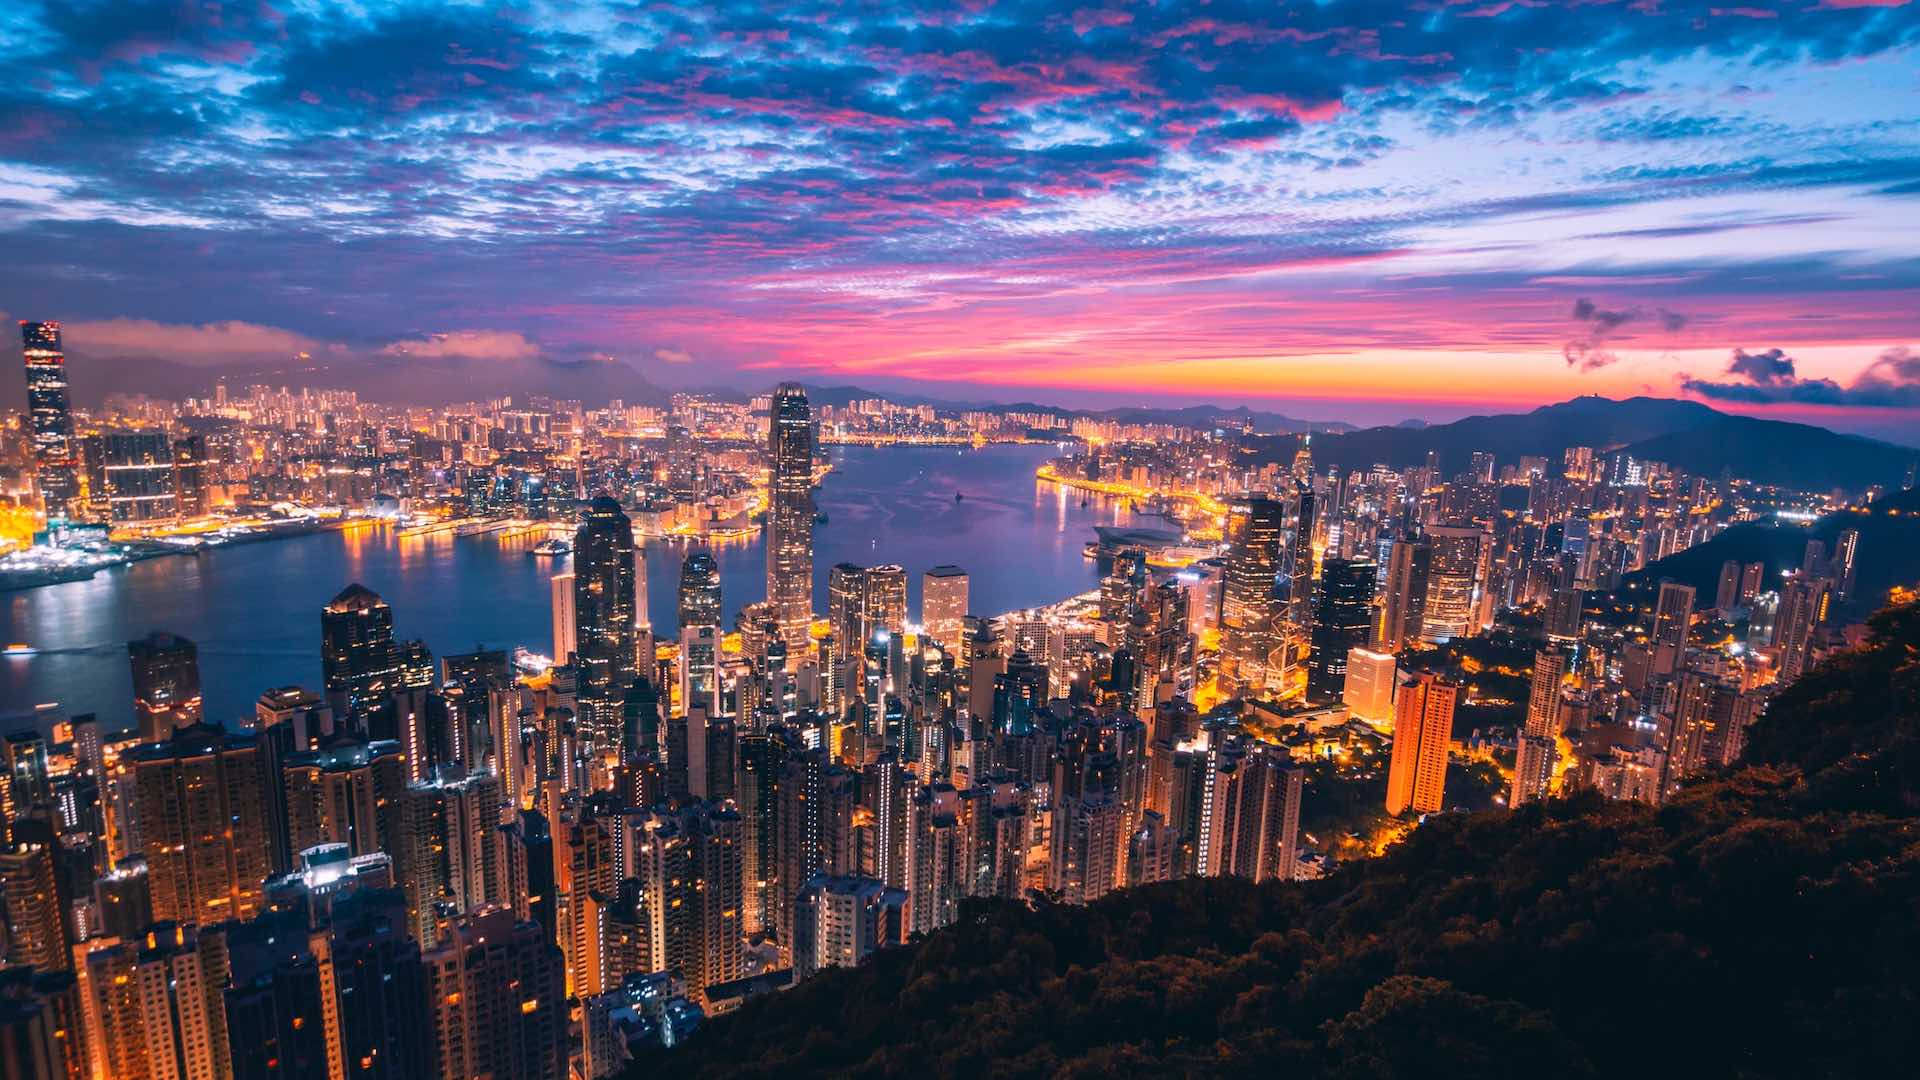 An Art Lover's Guide to Hong Kong